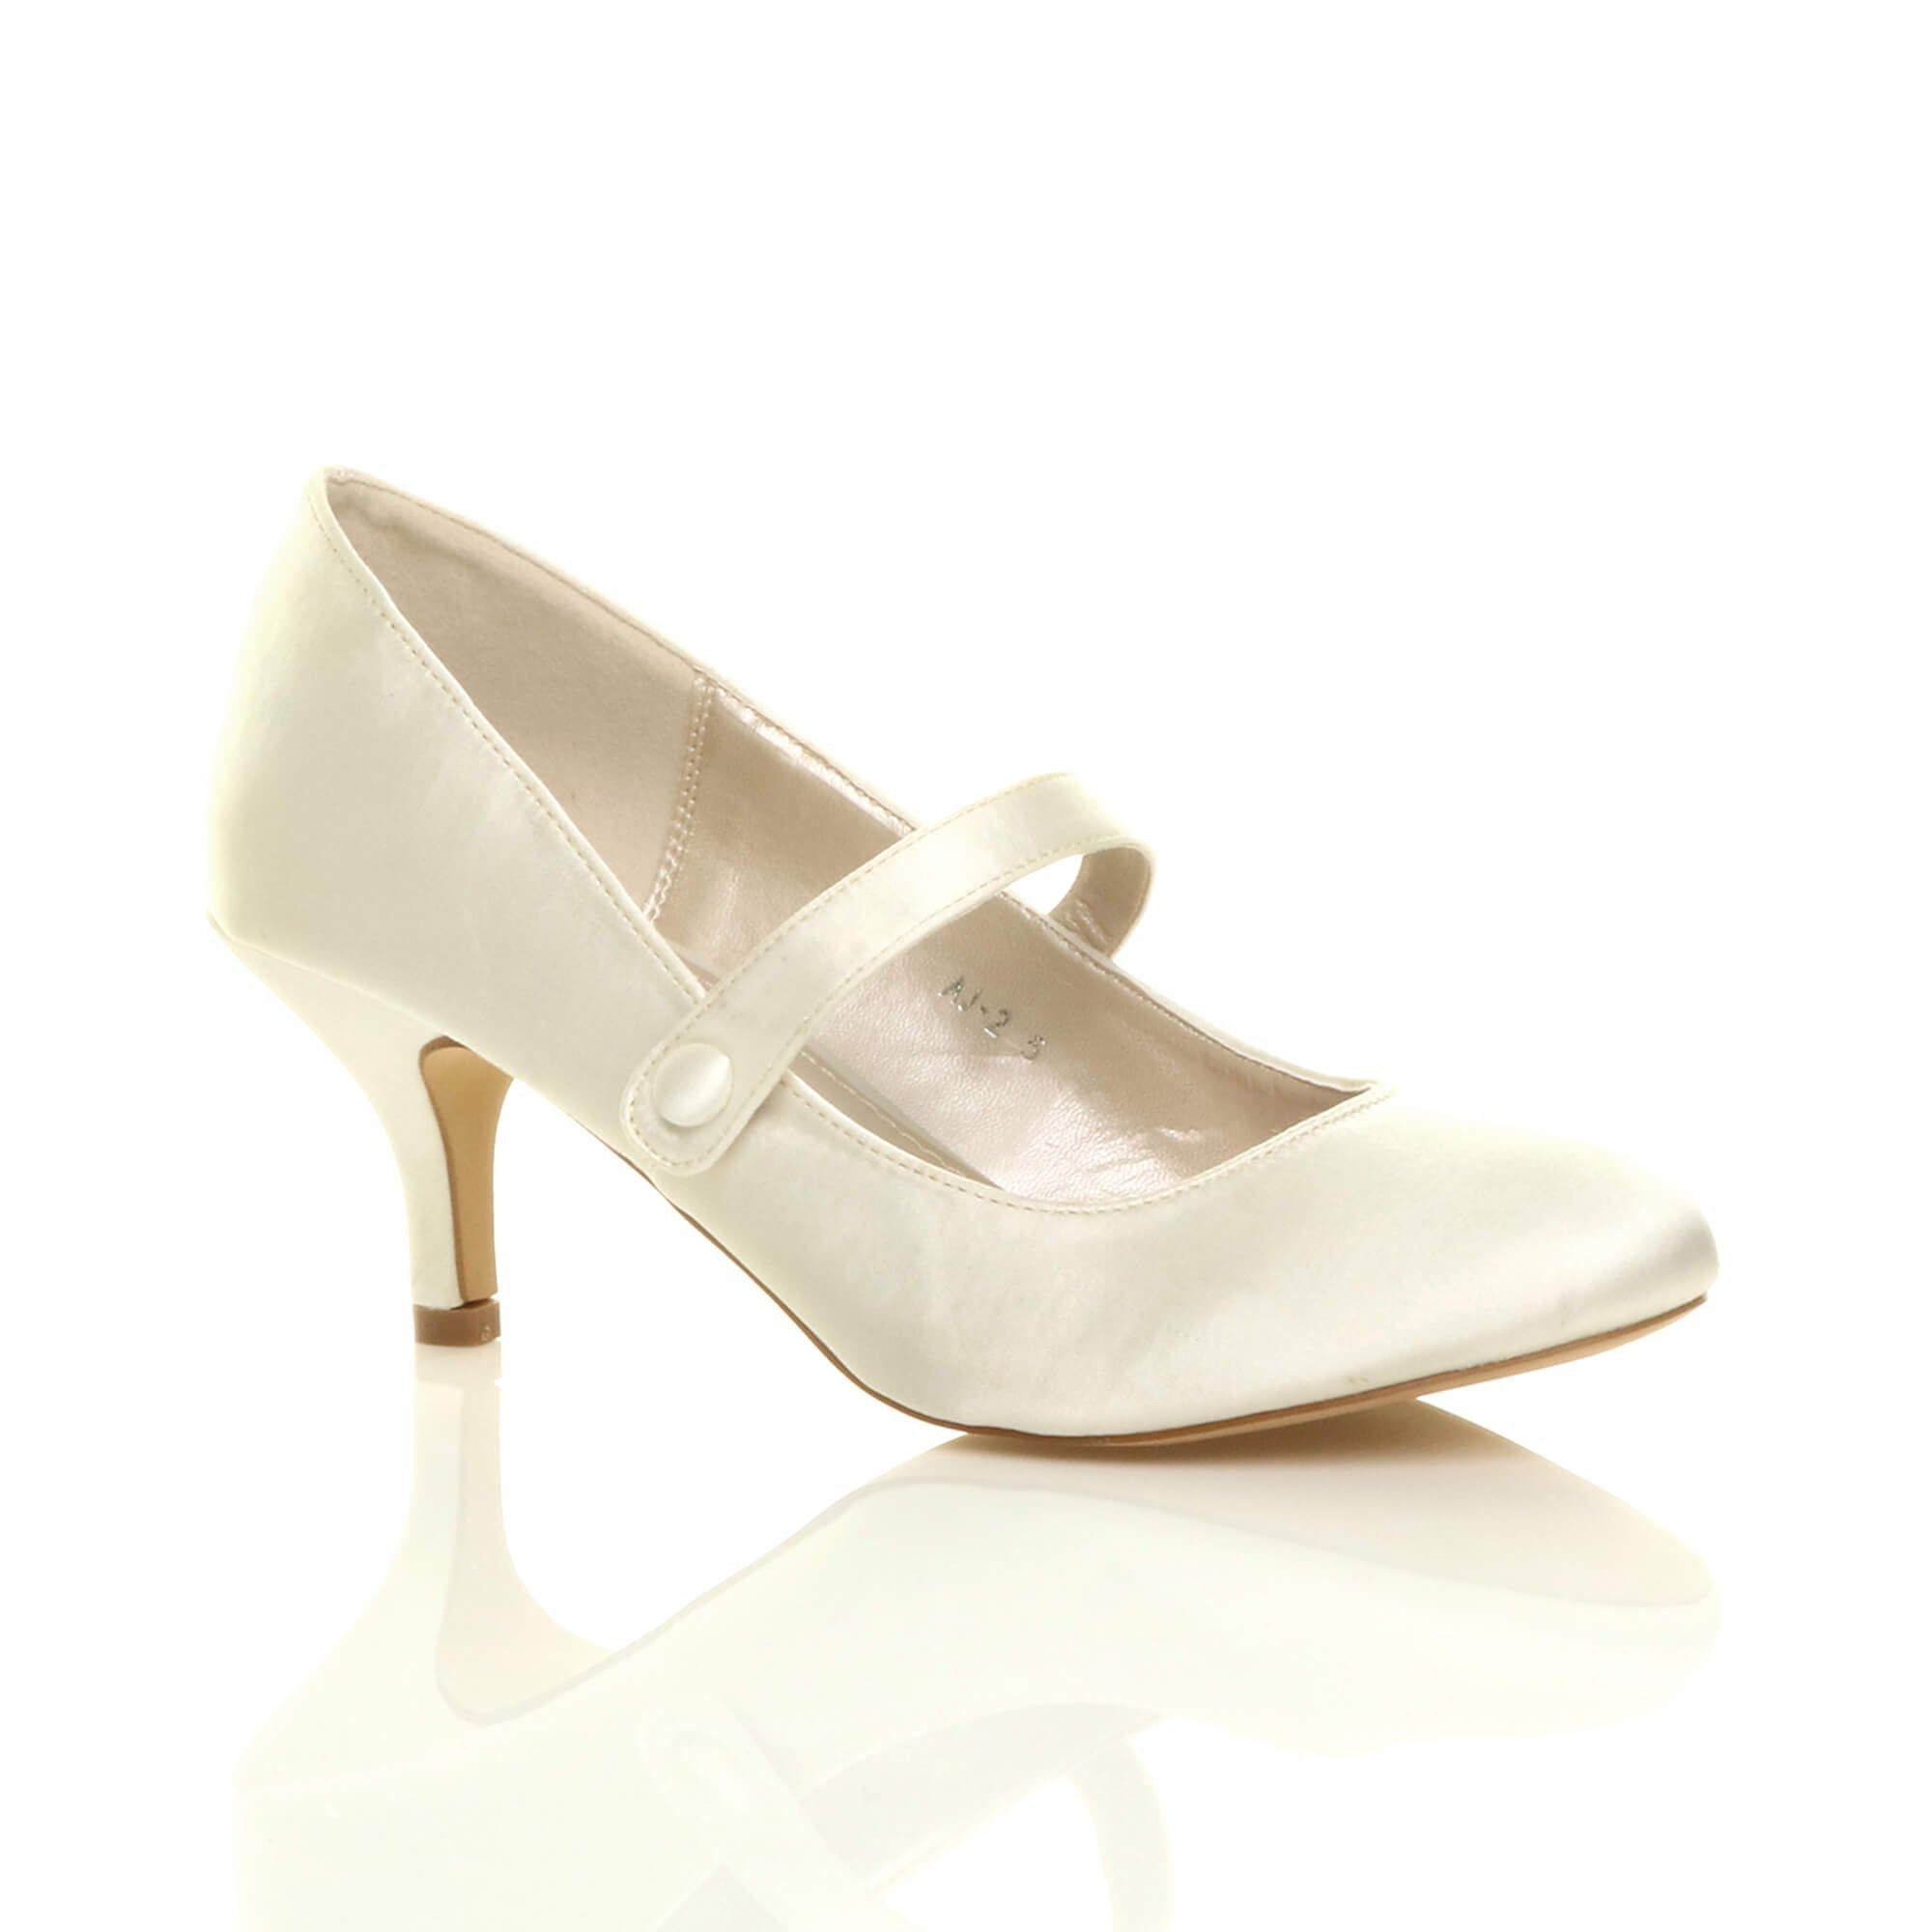 Атласные туфли-лодочки Мэри Джейн на среднем каблуке-котенке AJVANI, белый туфли лодочки женские на платформе классические свадебные туфли мэри джейн средний каблук черные белые 2021